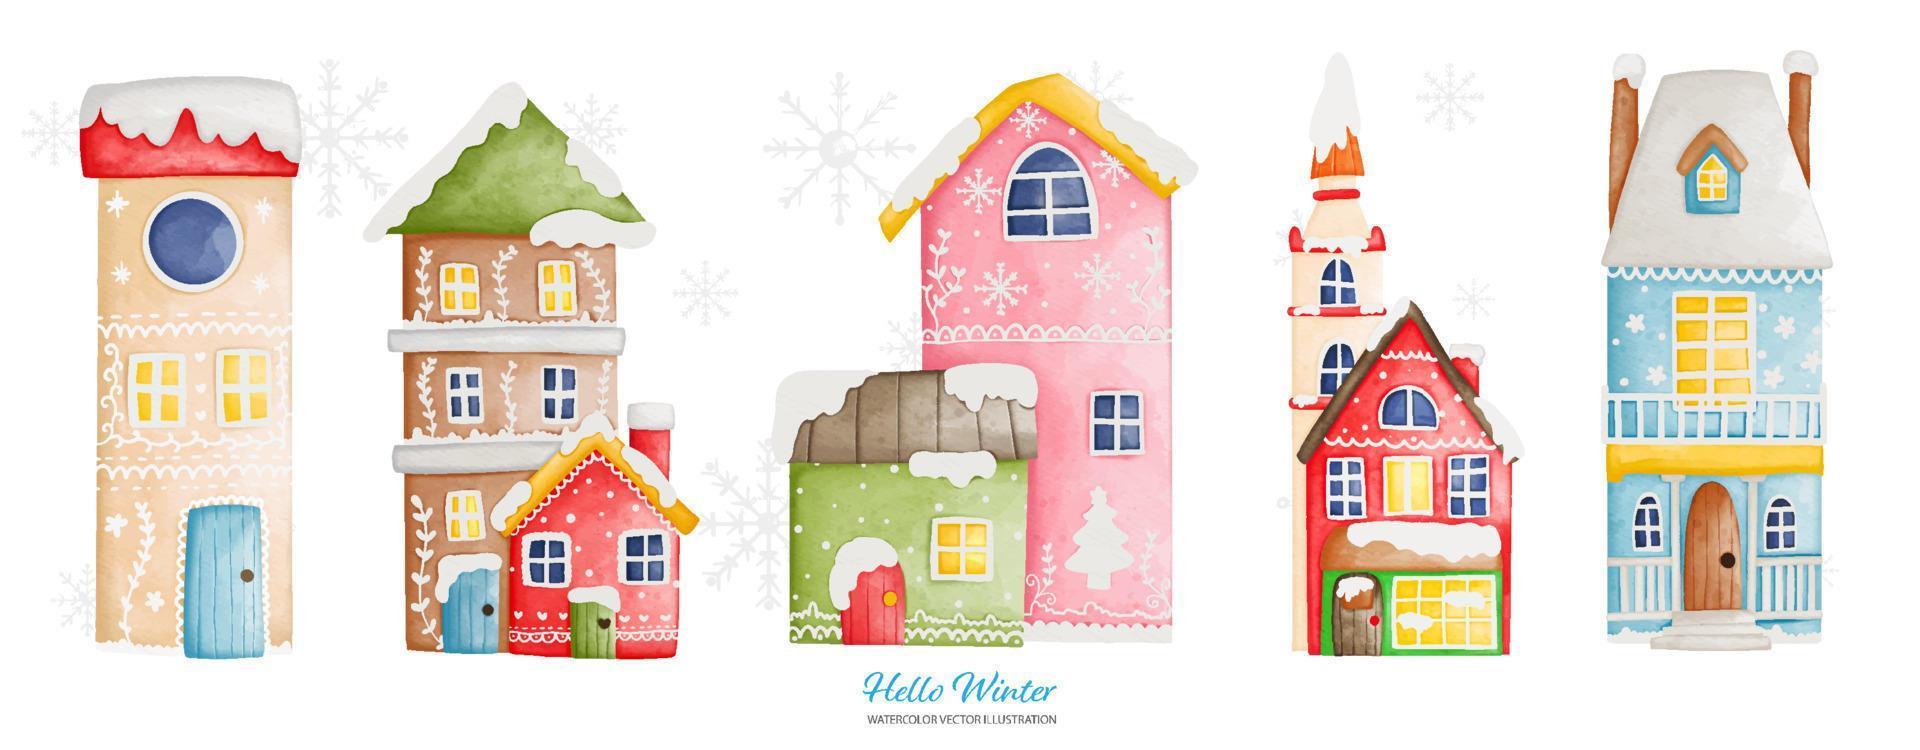 maison d'hiver vintage en hiver, illustration vectorielle aquarelle vecteur